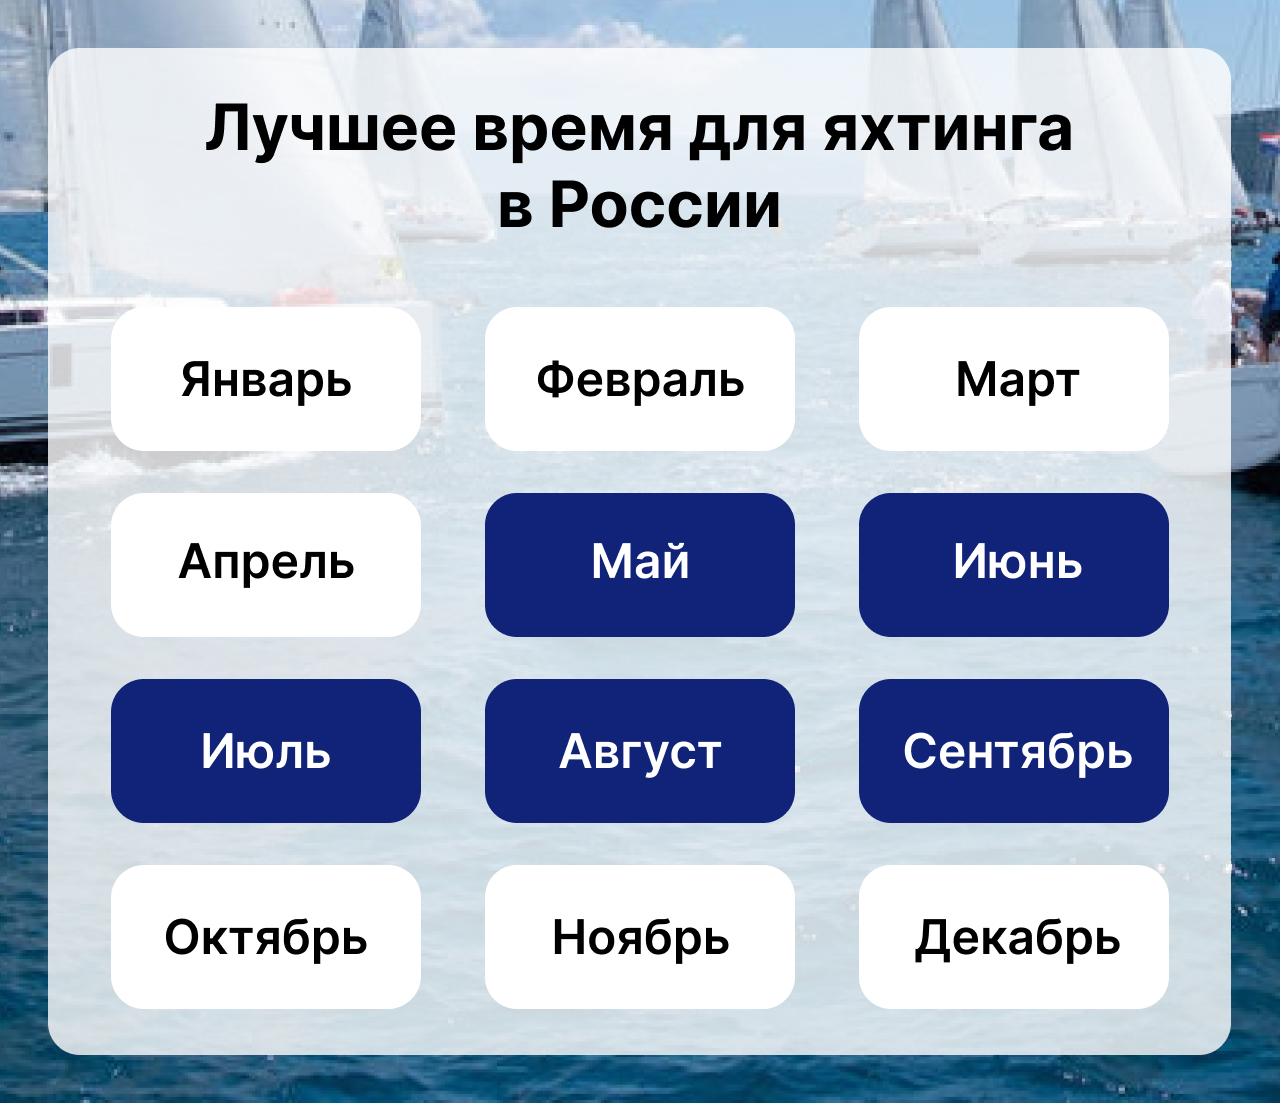 Лучшее время для яхтинга в России, Когда сезон яхтинга в России, Календарь яхтинга в России.